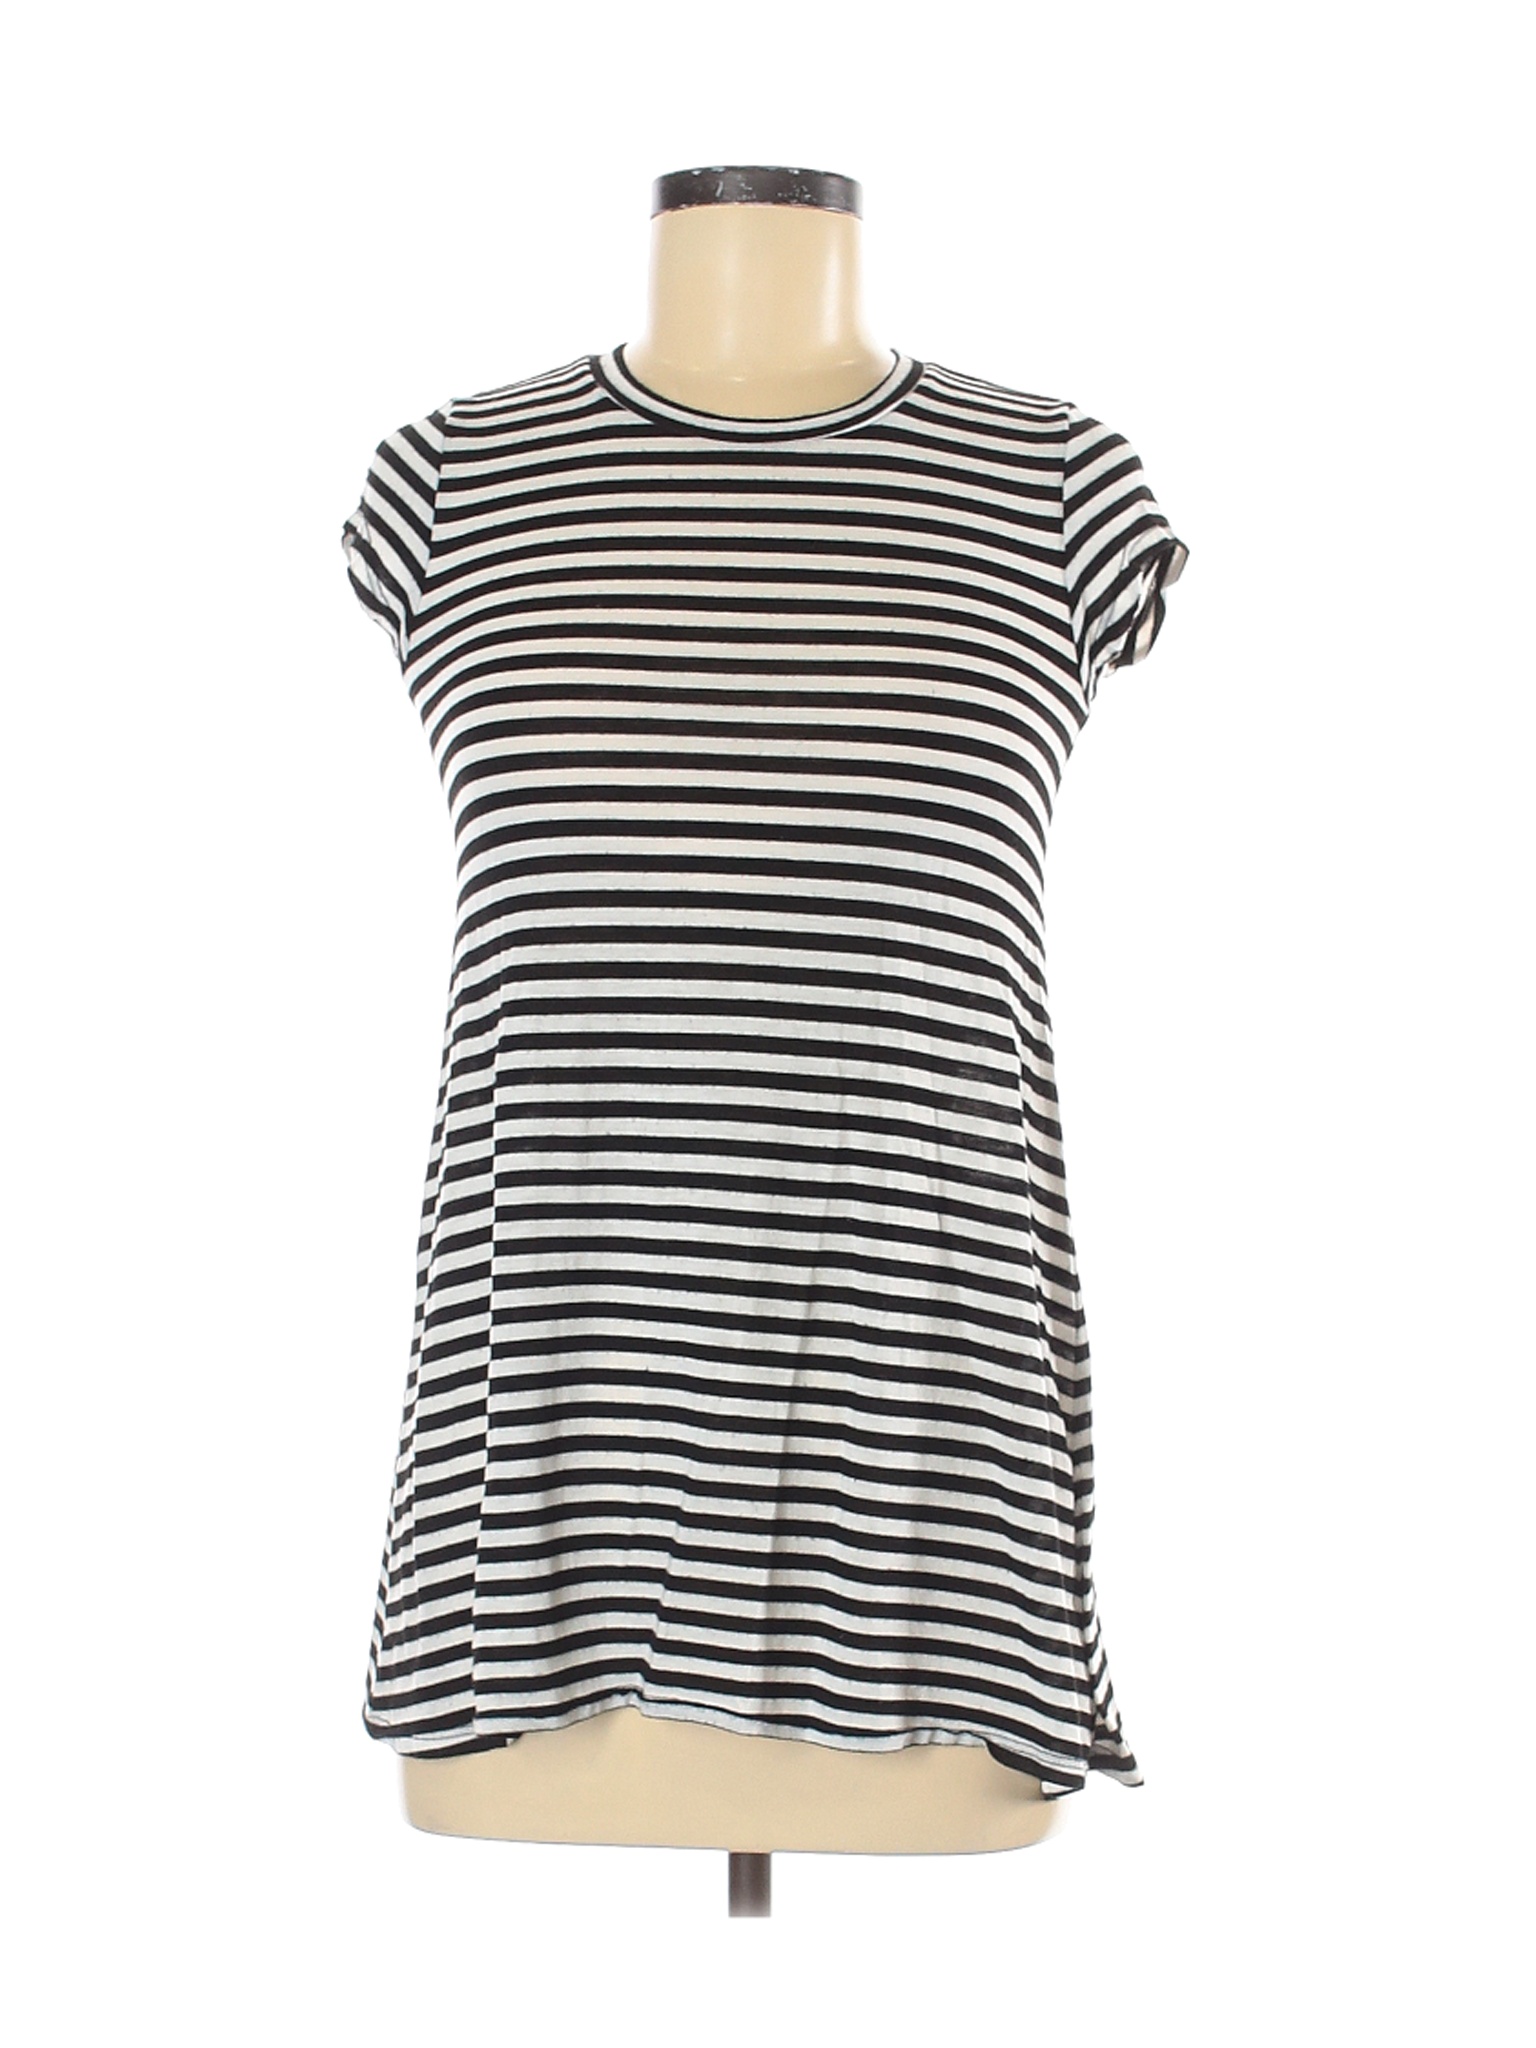 Billabong Women Black Short Sleeve T-Shirt M | eBay